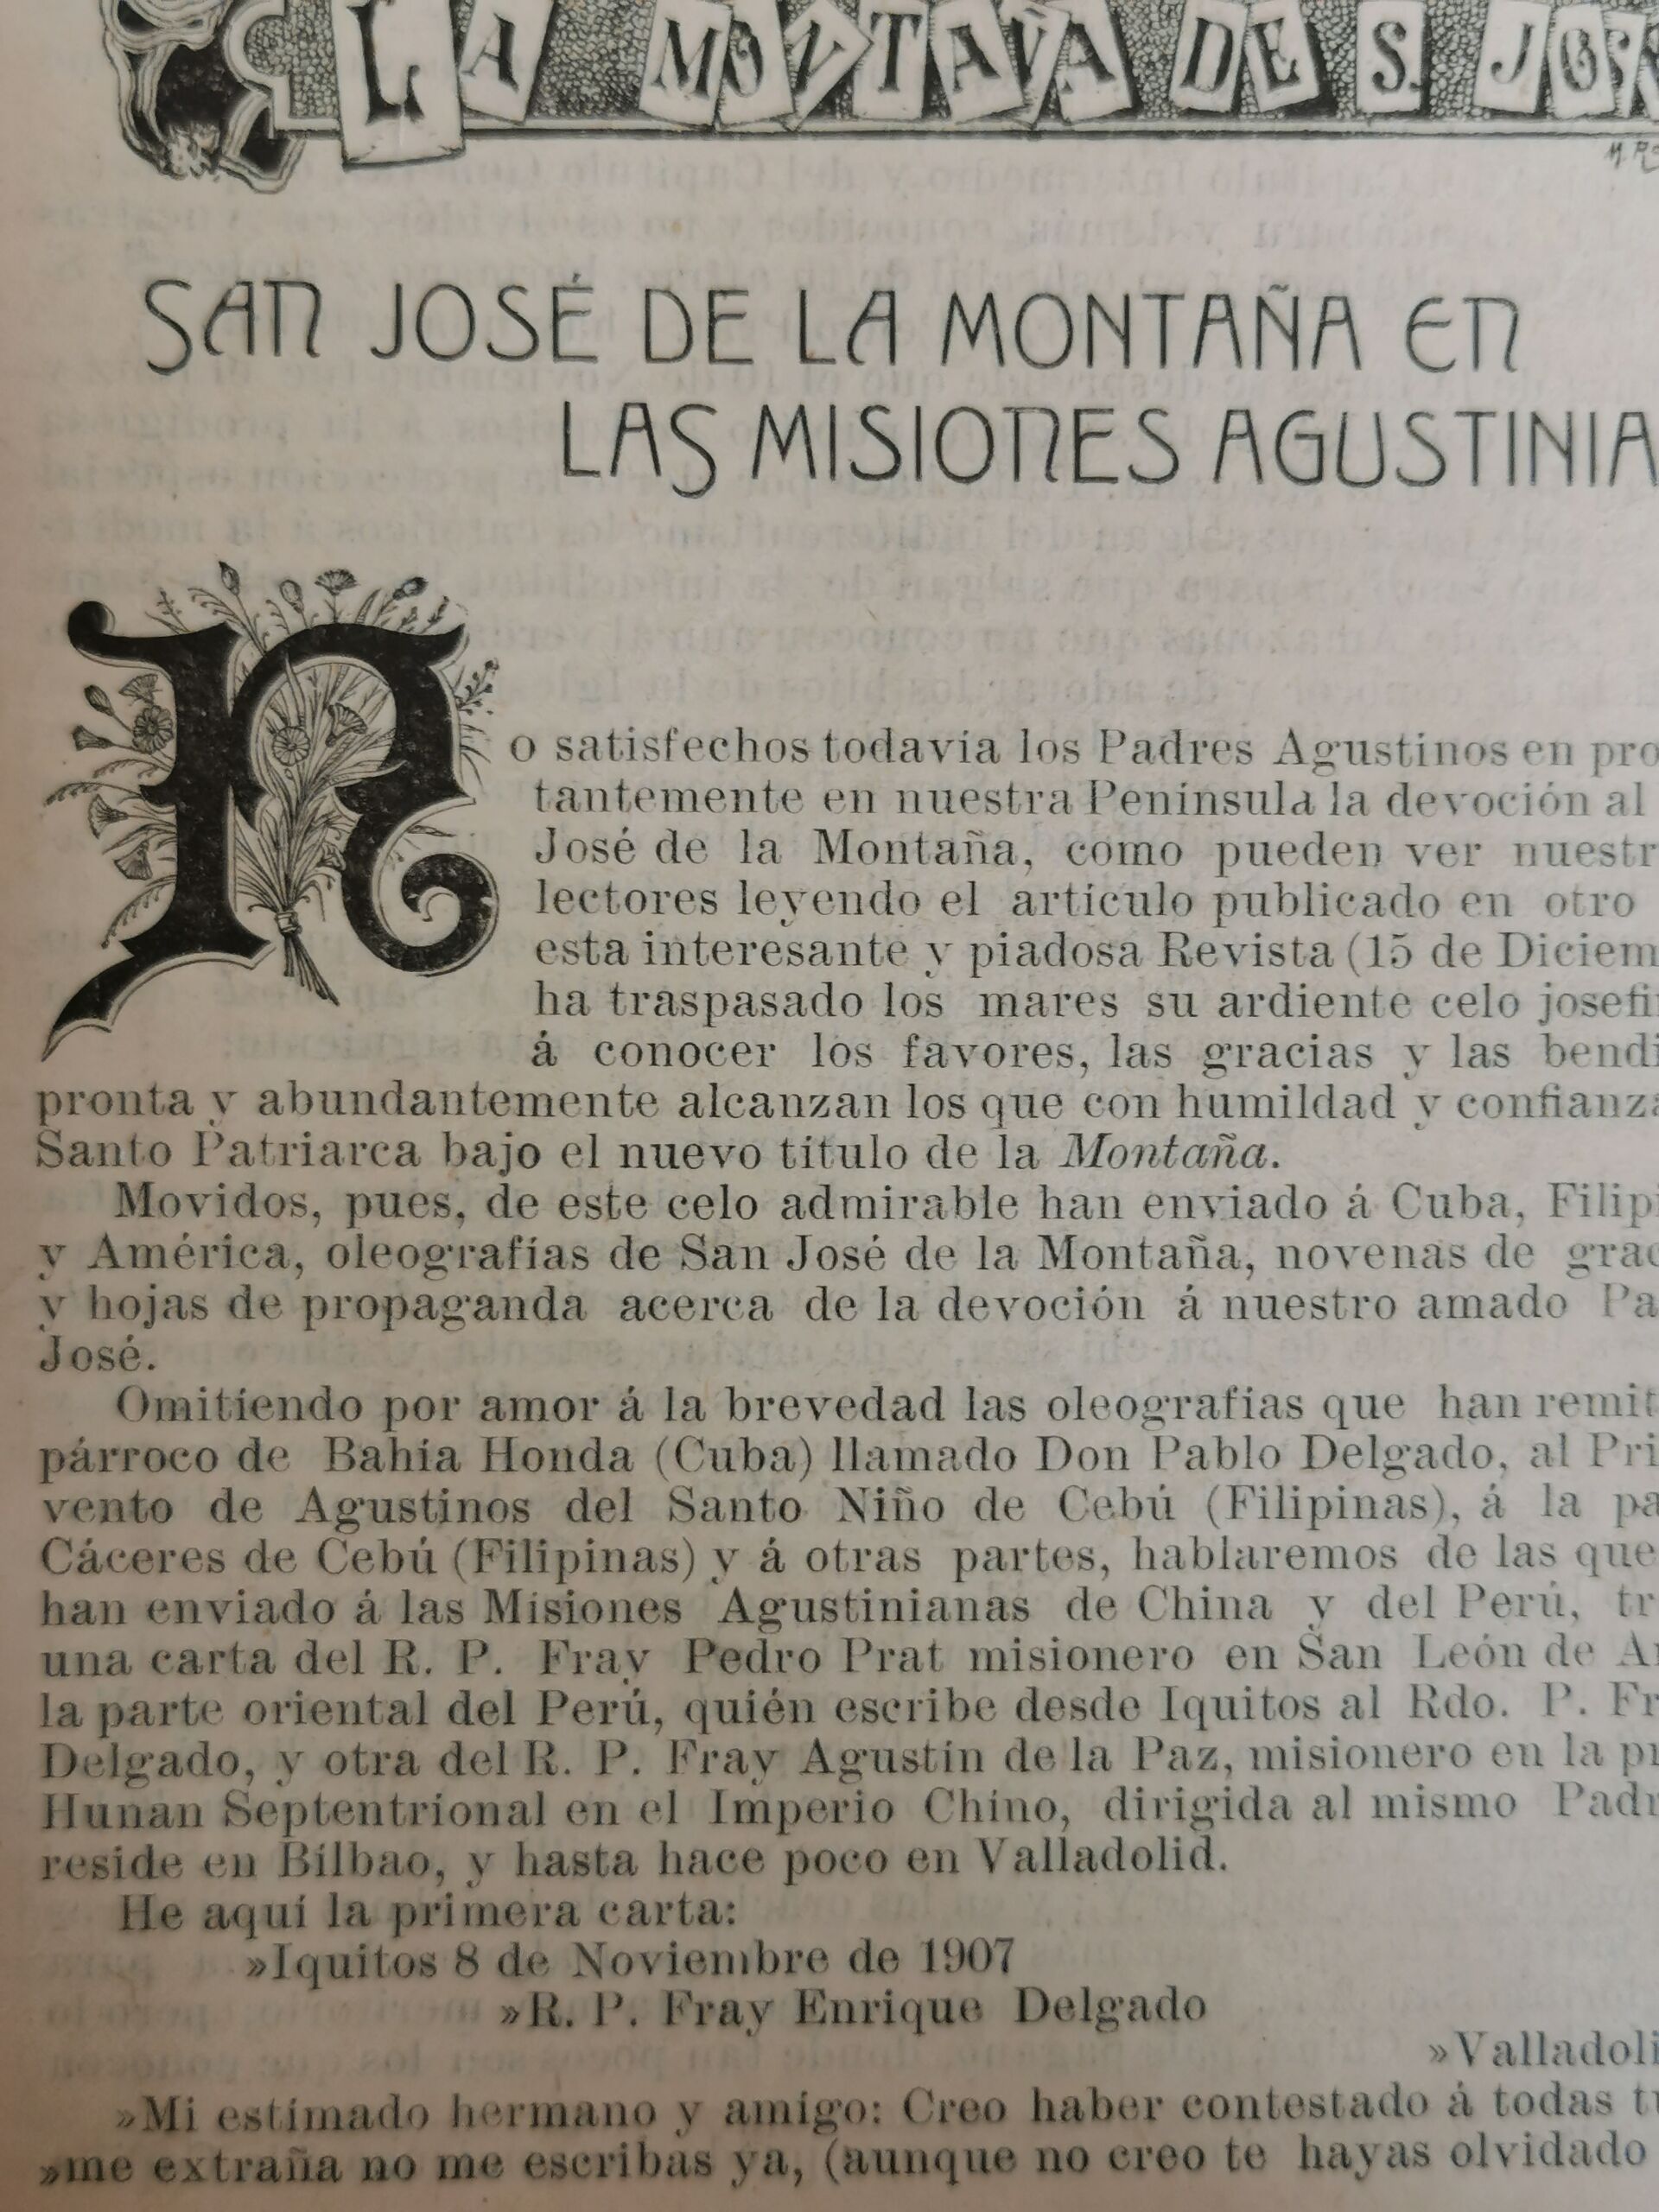 publicación en la revista en 1908 sobre los padres agustinos y como llevan la devoción a San josé de la Montaña por sus misiones